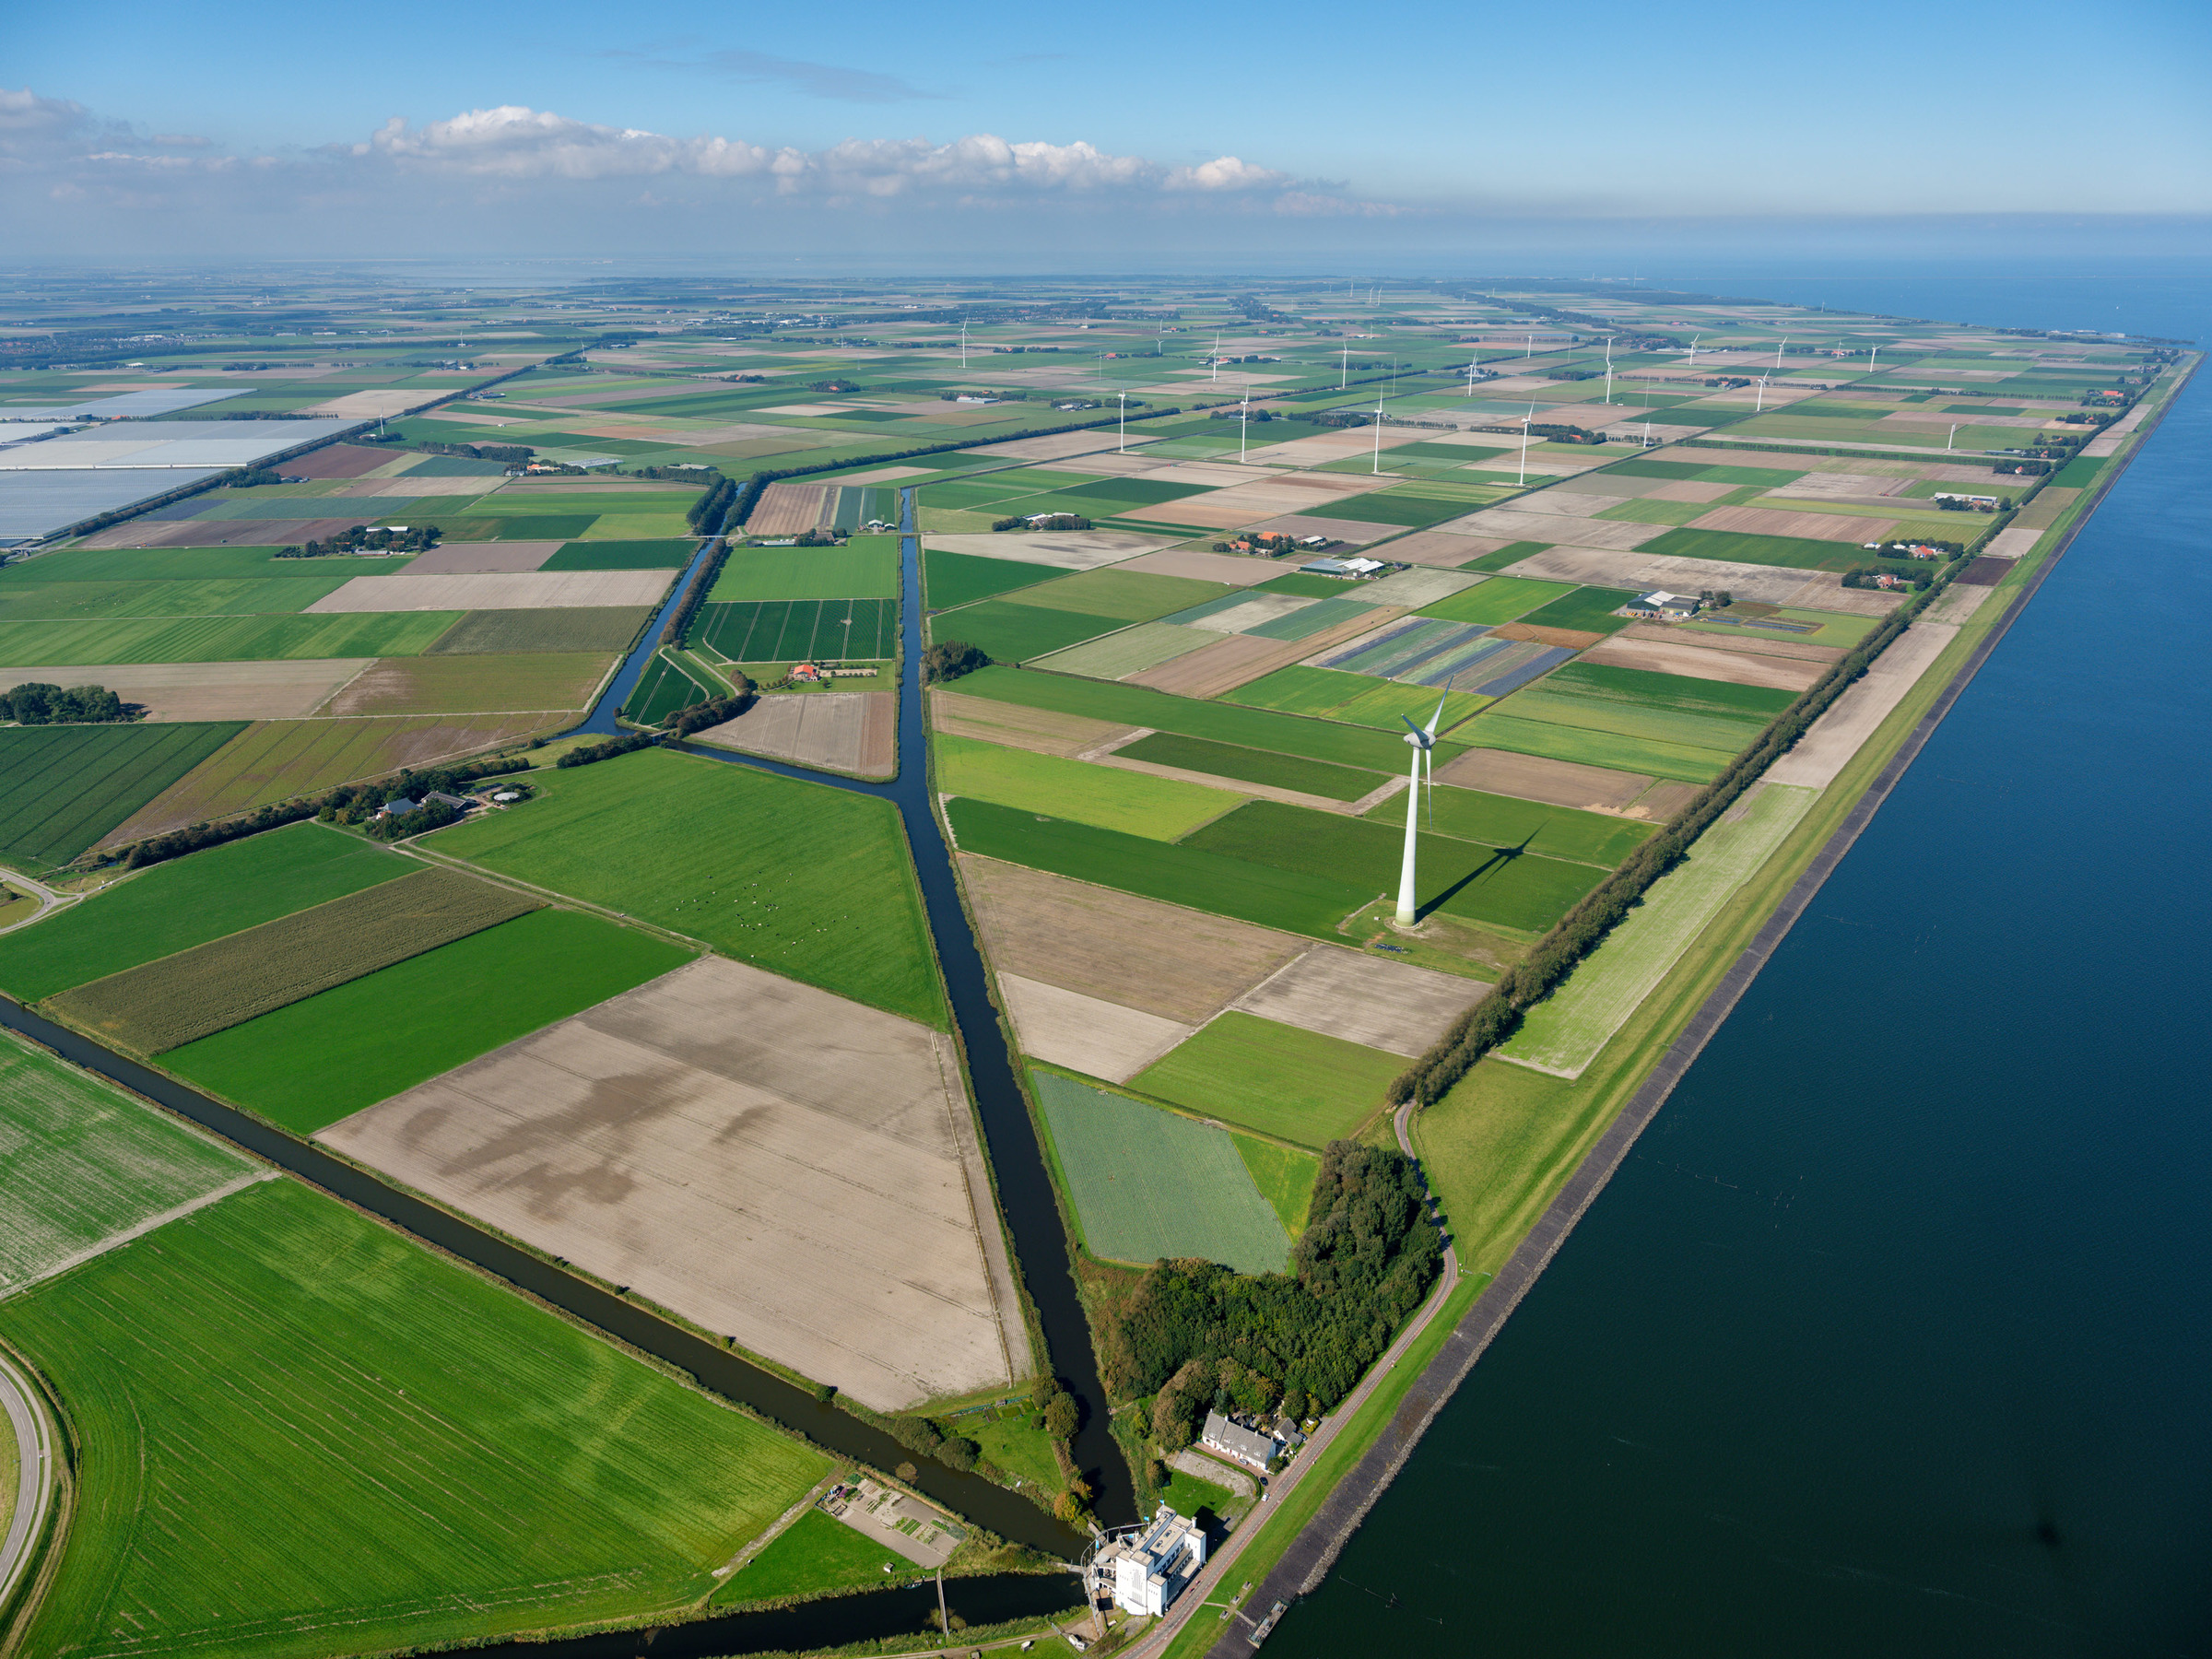 Aerial photo of Wieringermeer with windmills